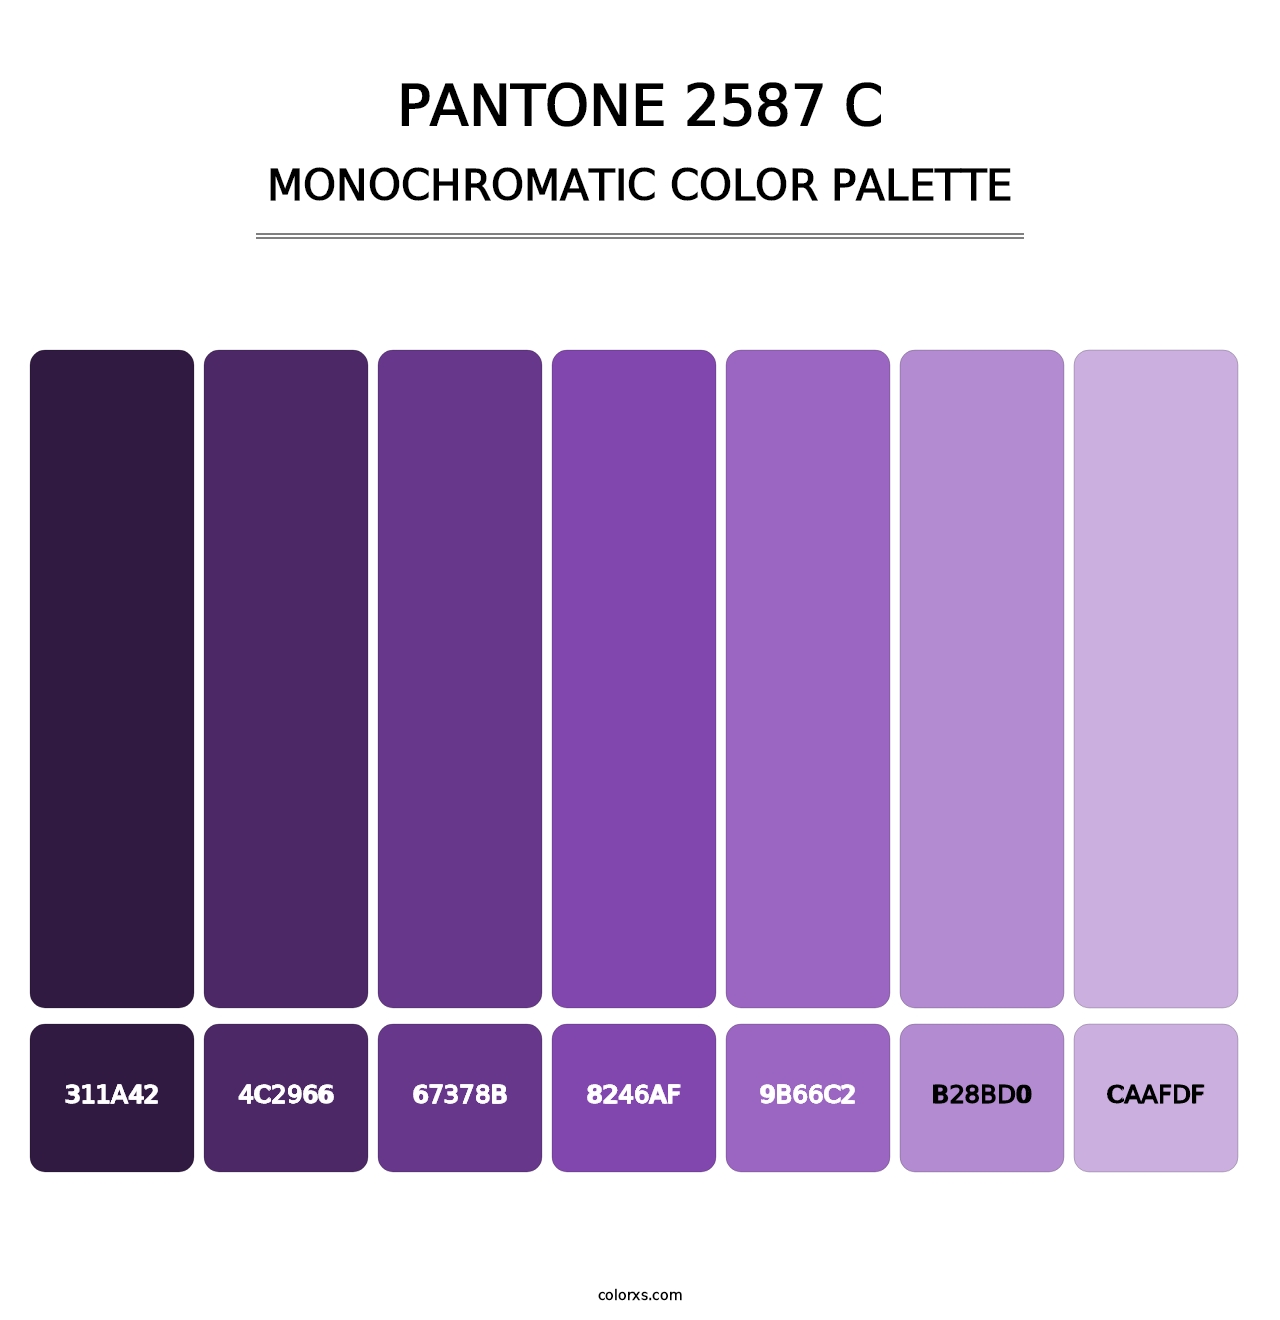 PANTONE 2587 C - Monochromatic Color Palette